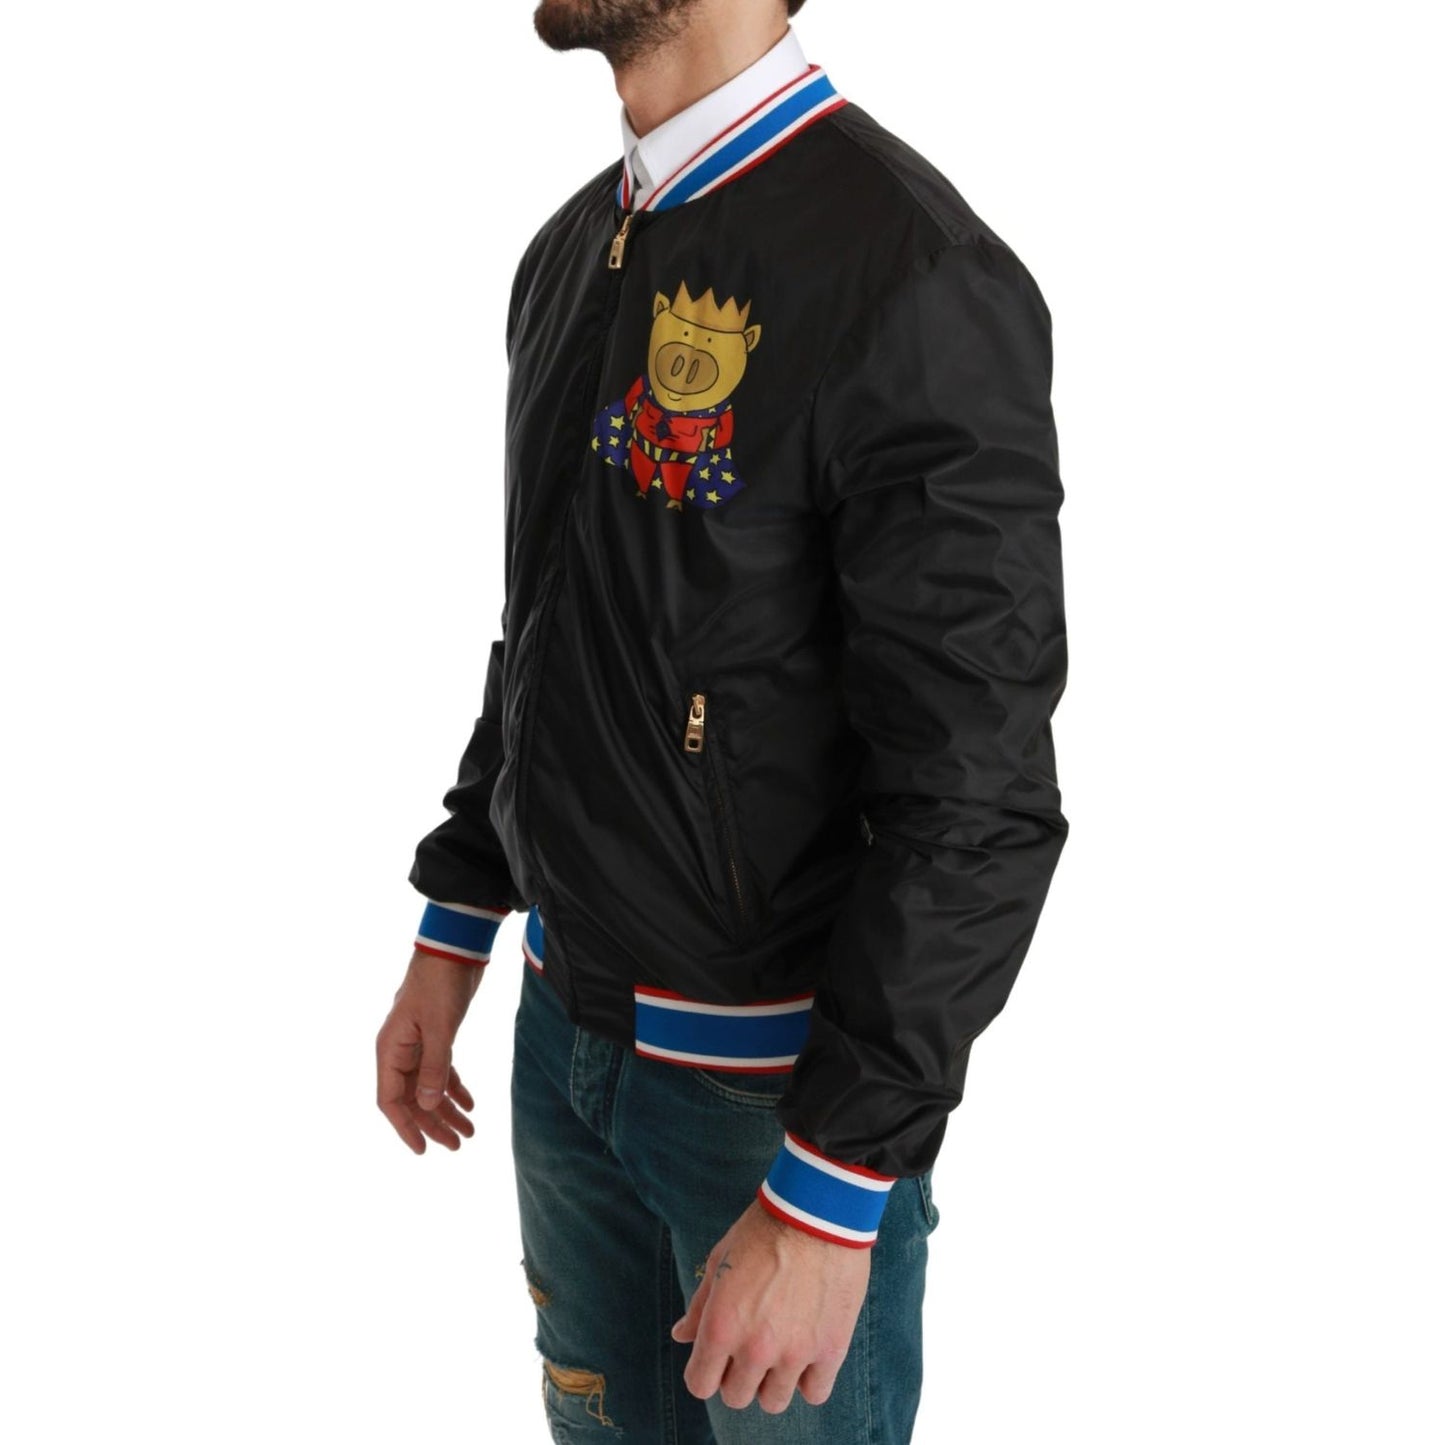 Dolce & Gabbana Elegant Multicolor Motive Bomber Jacket black-year-of-the-pig-bomber-jacket Coats & Jackets IMG_0115-scaled-59579bf8-c35.jpg